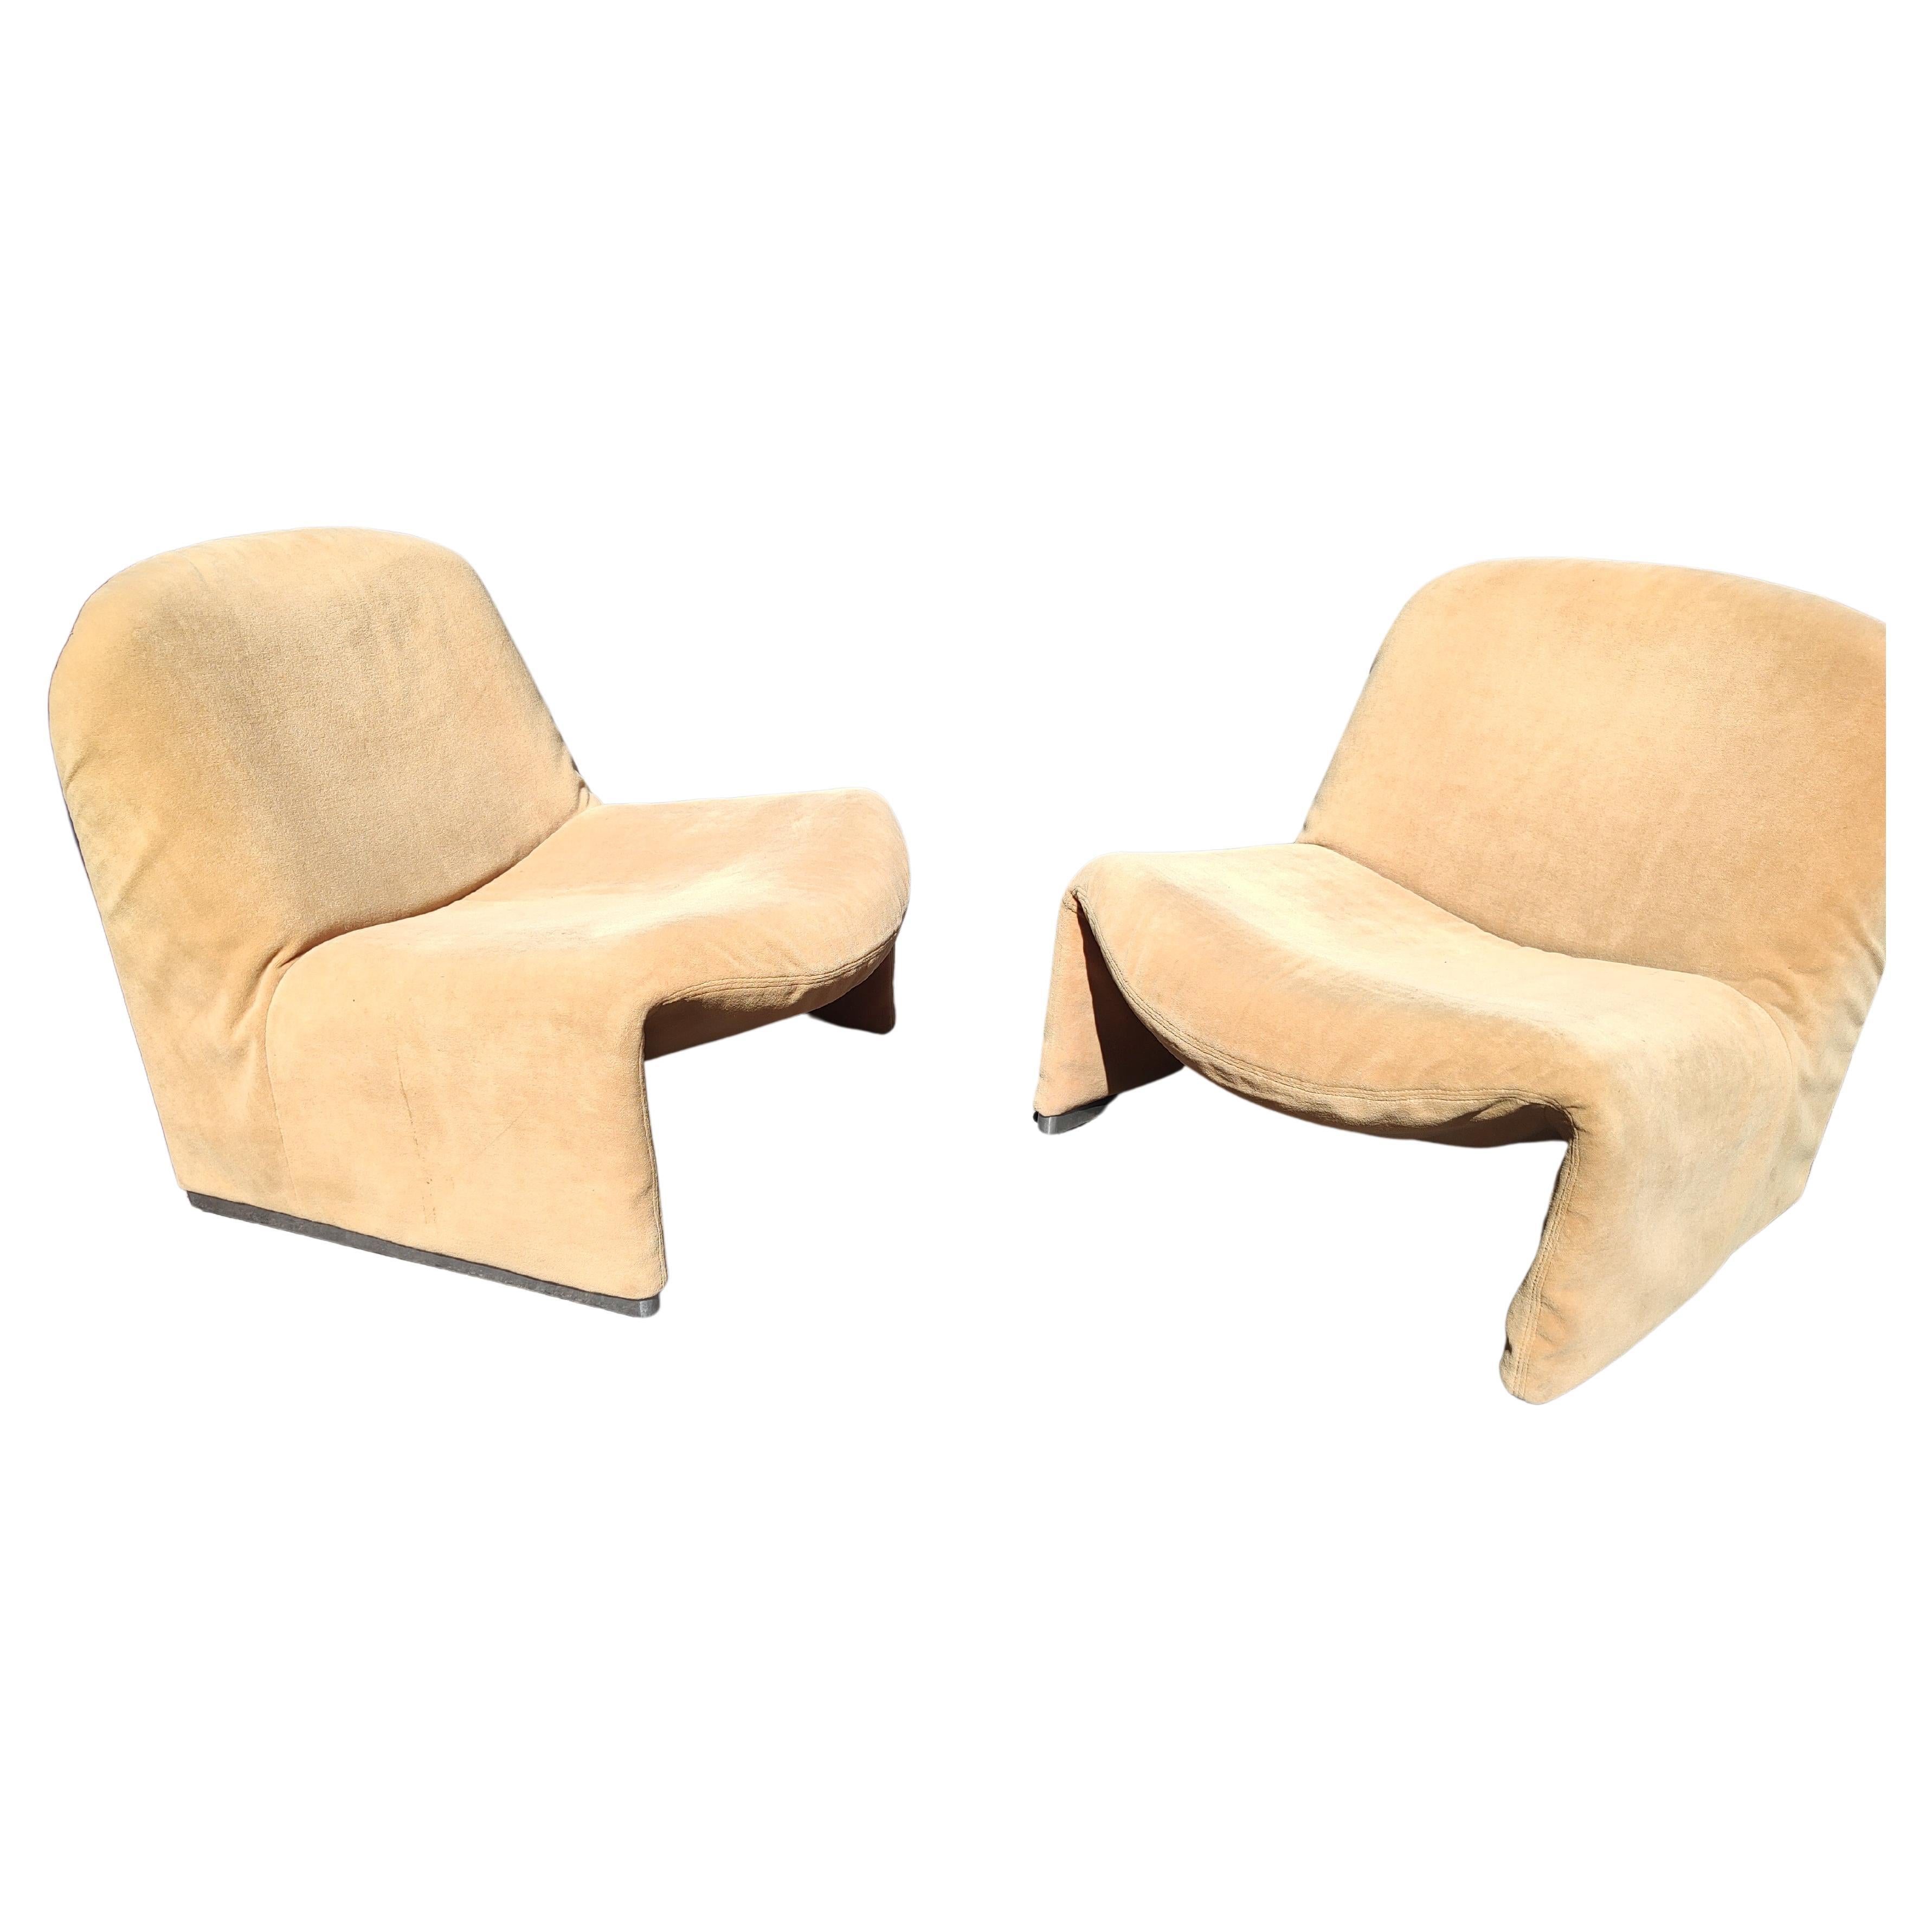 Fantastisches Paar Alky-Stühle aus dem Jahr 1969, entworfen von Giancarlo Piretti für Artifort. In dem, was zu sein scheint ursprünglichen Stoff, der Verschleiß von normalen Gebrauch und Alter zeigt. Die Aluminiumfüße und die Schaumstoffpolsterung